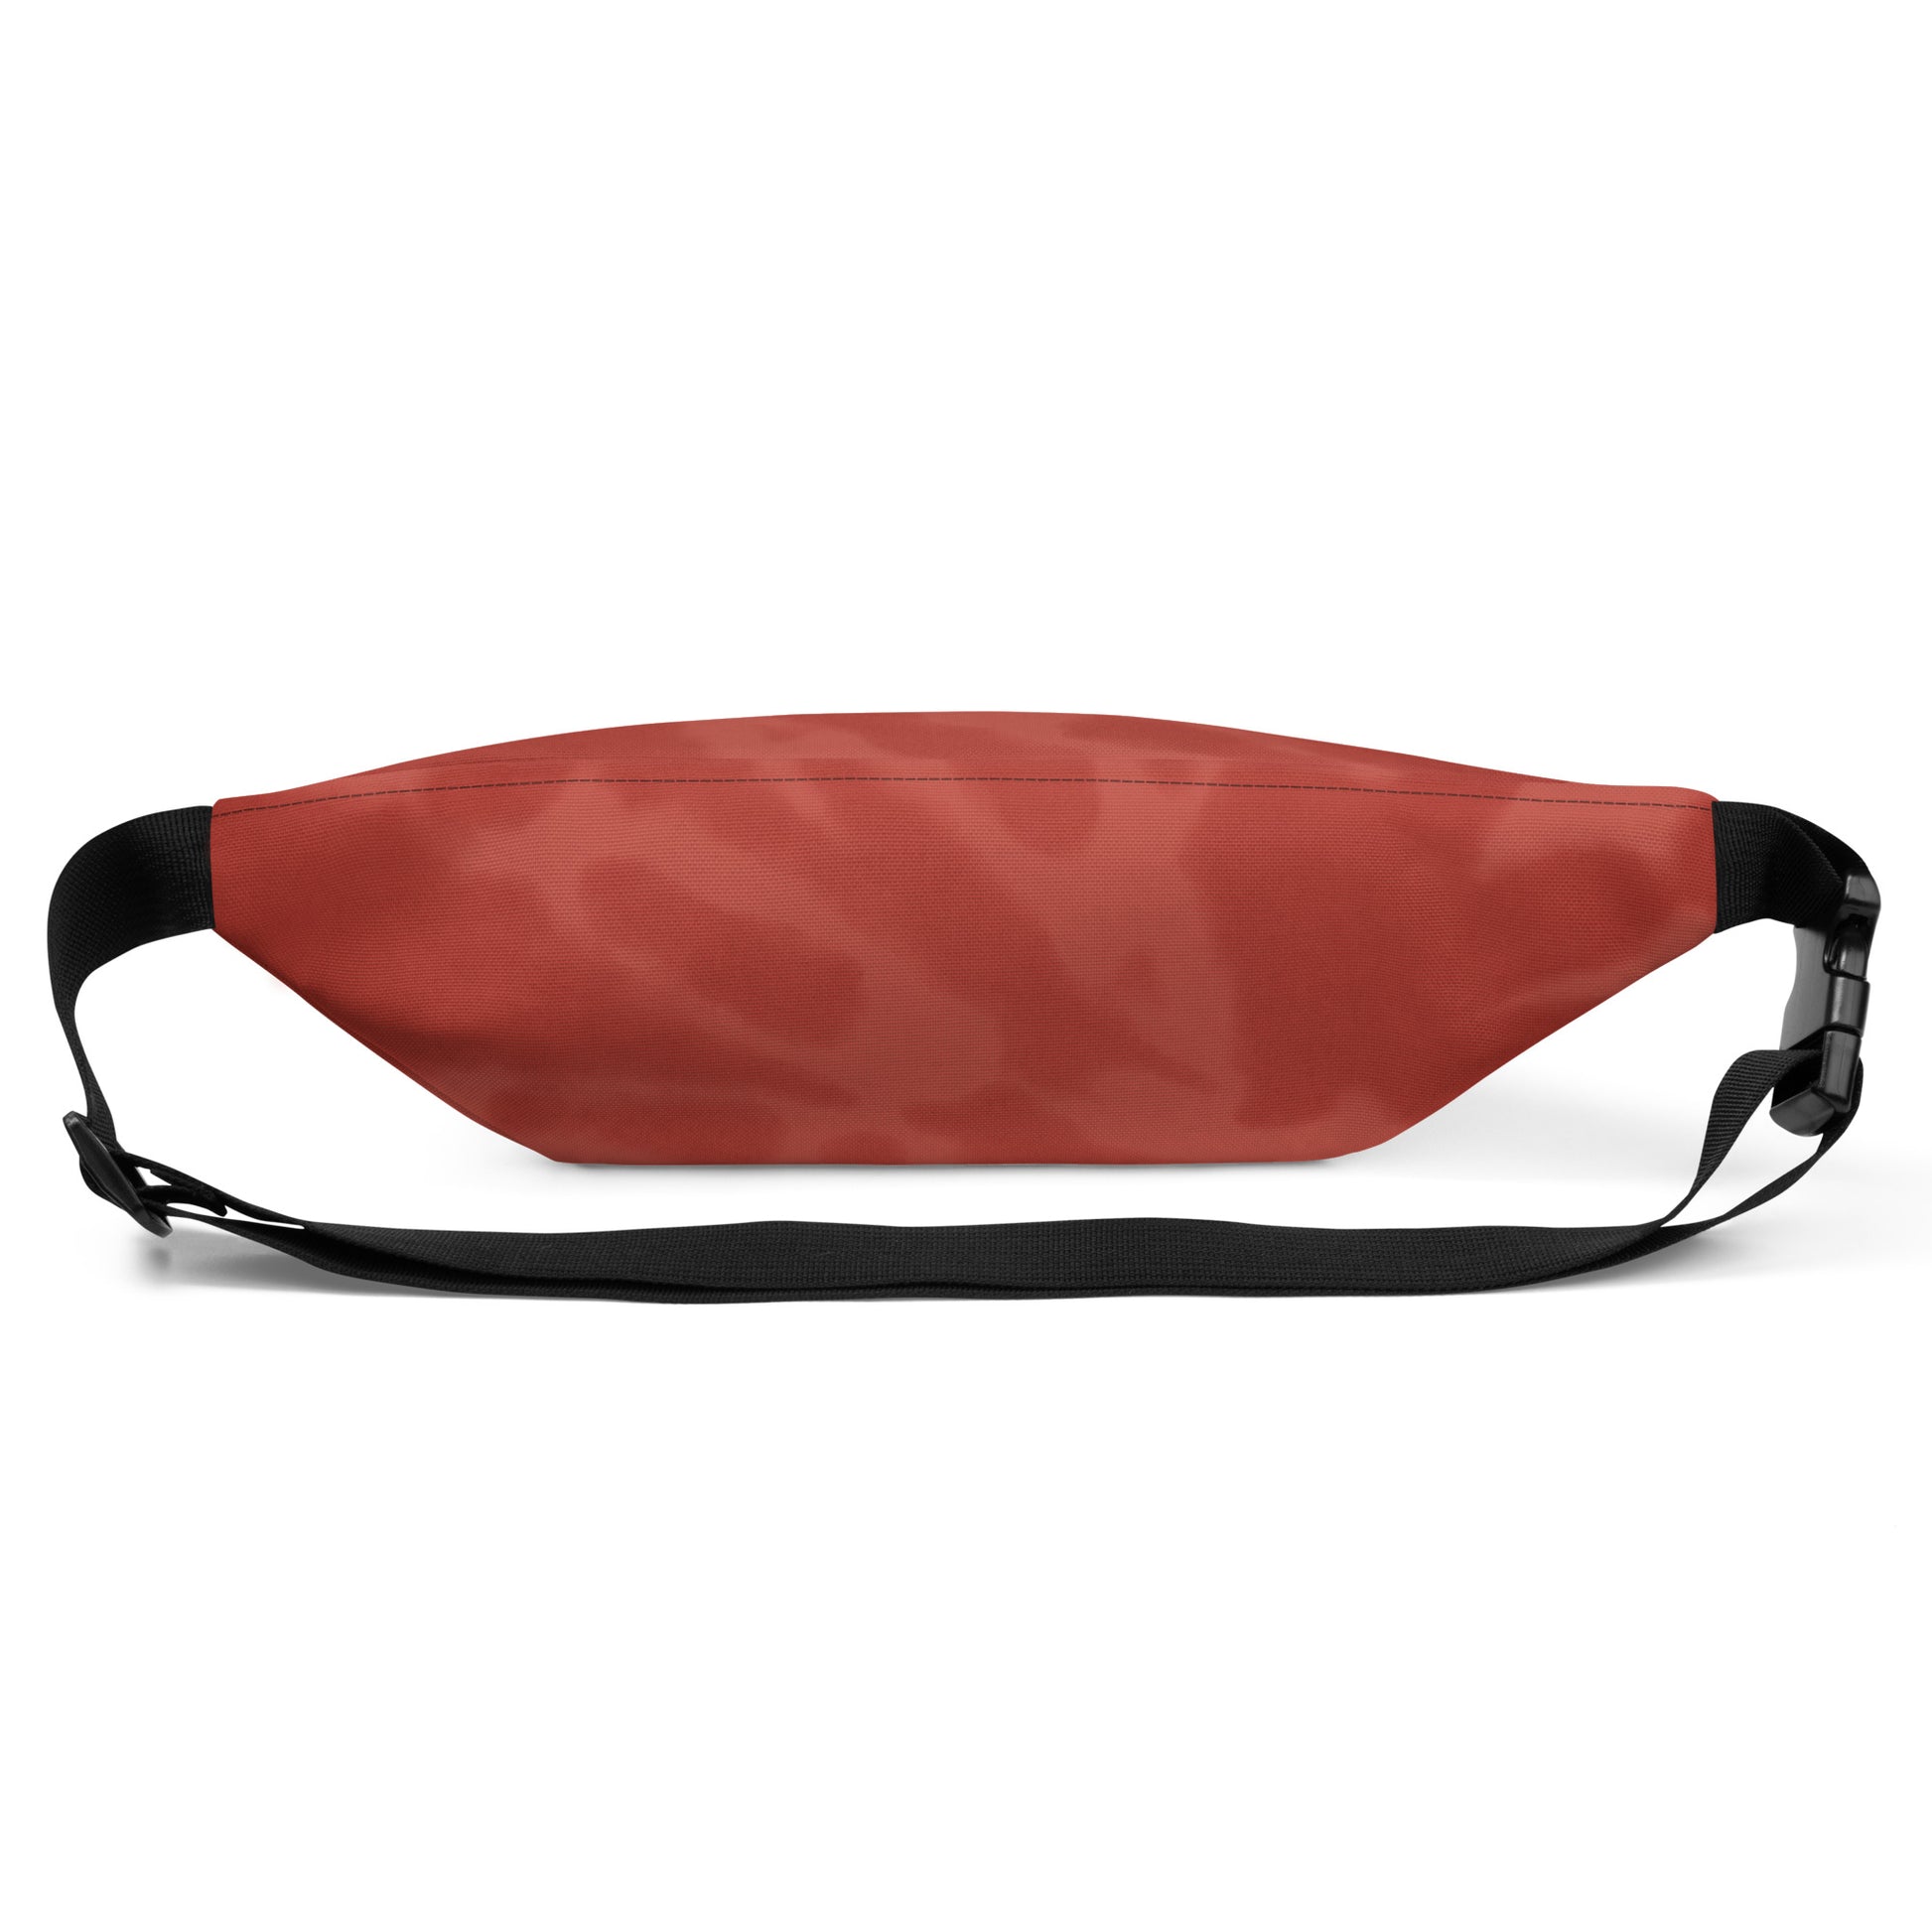 Travel Gift Fanny Pack - Red Tie-Dye • CVG Cincinnati • YHM Designs - Image 09